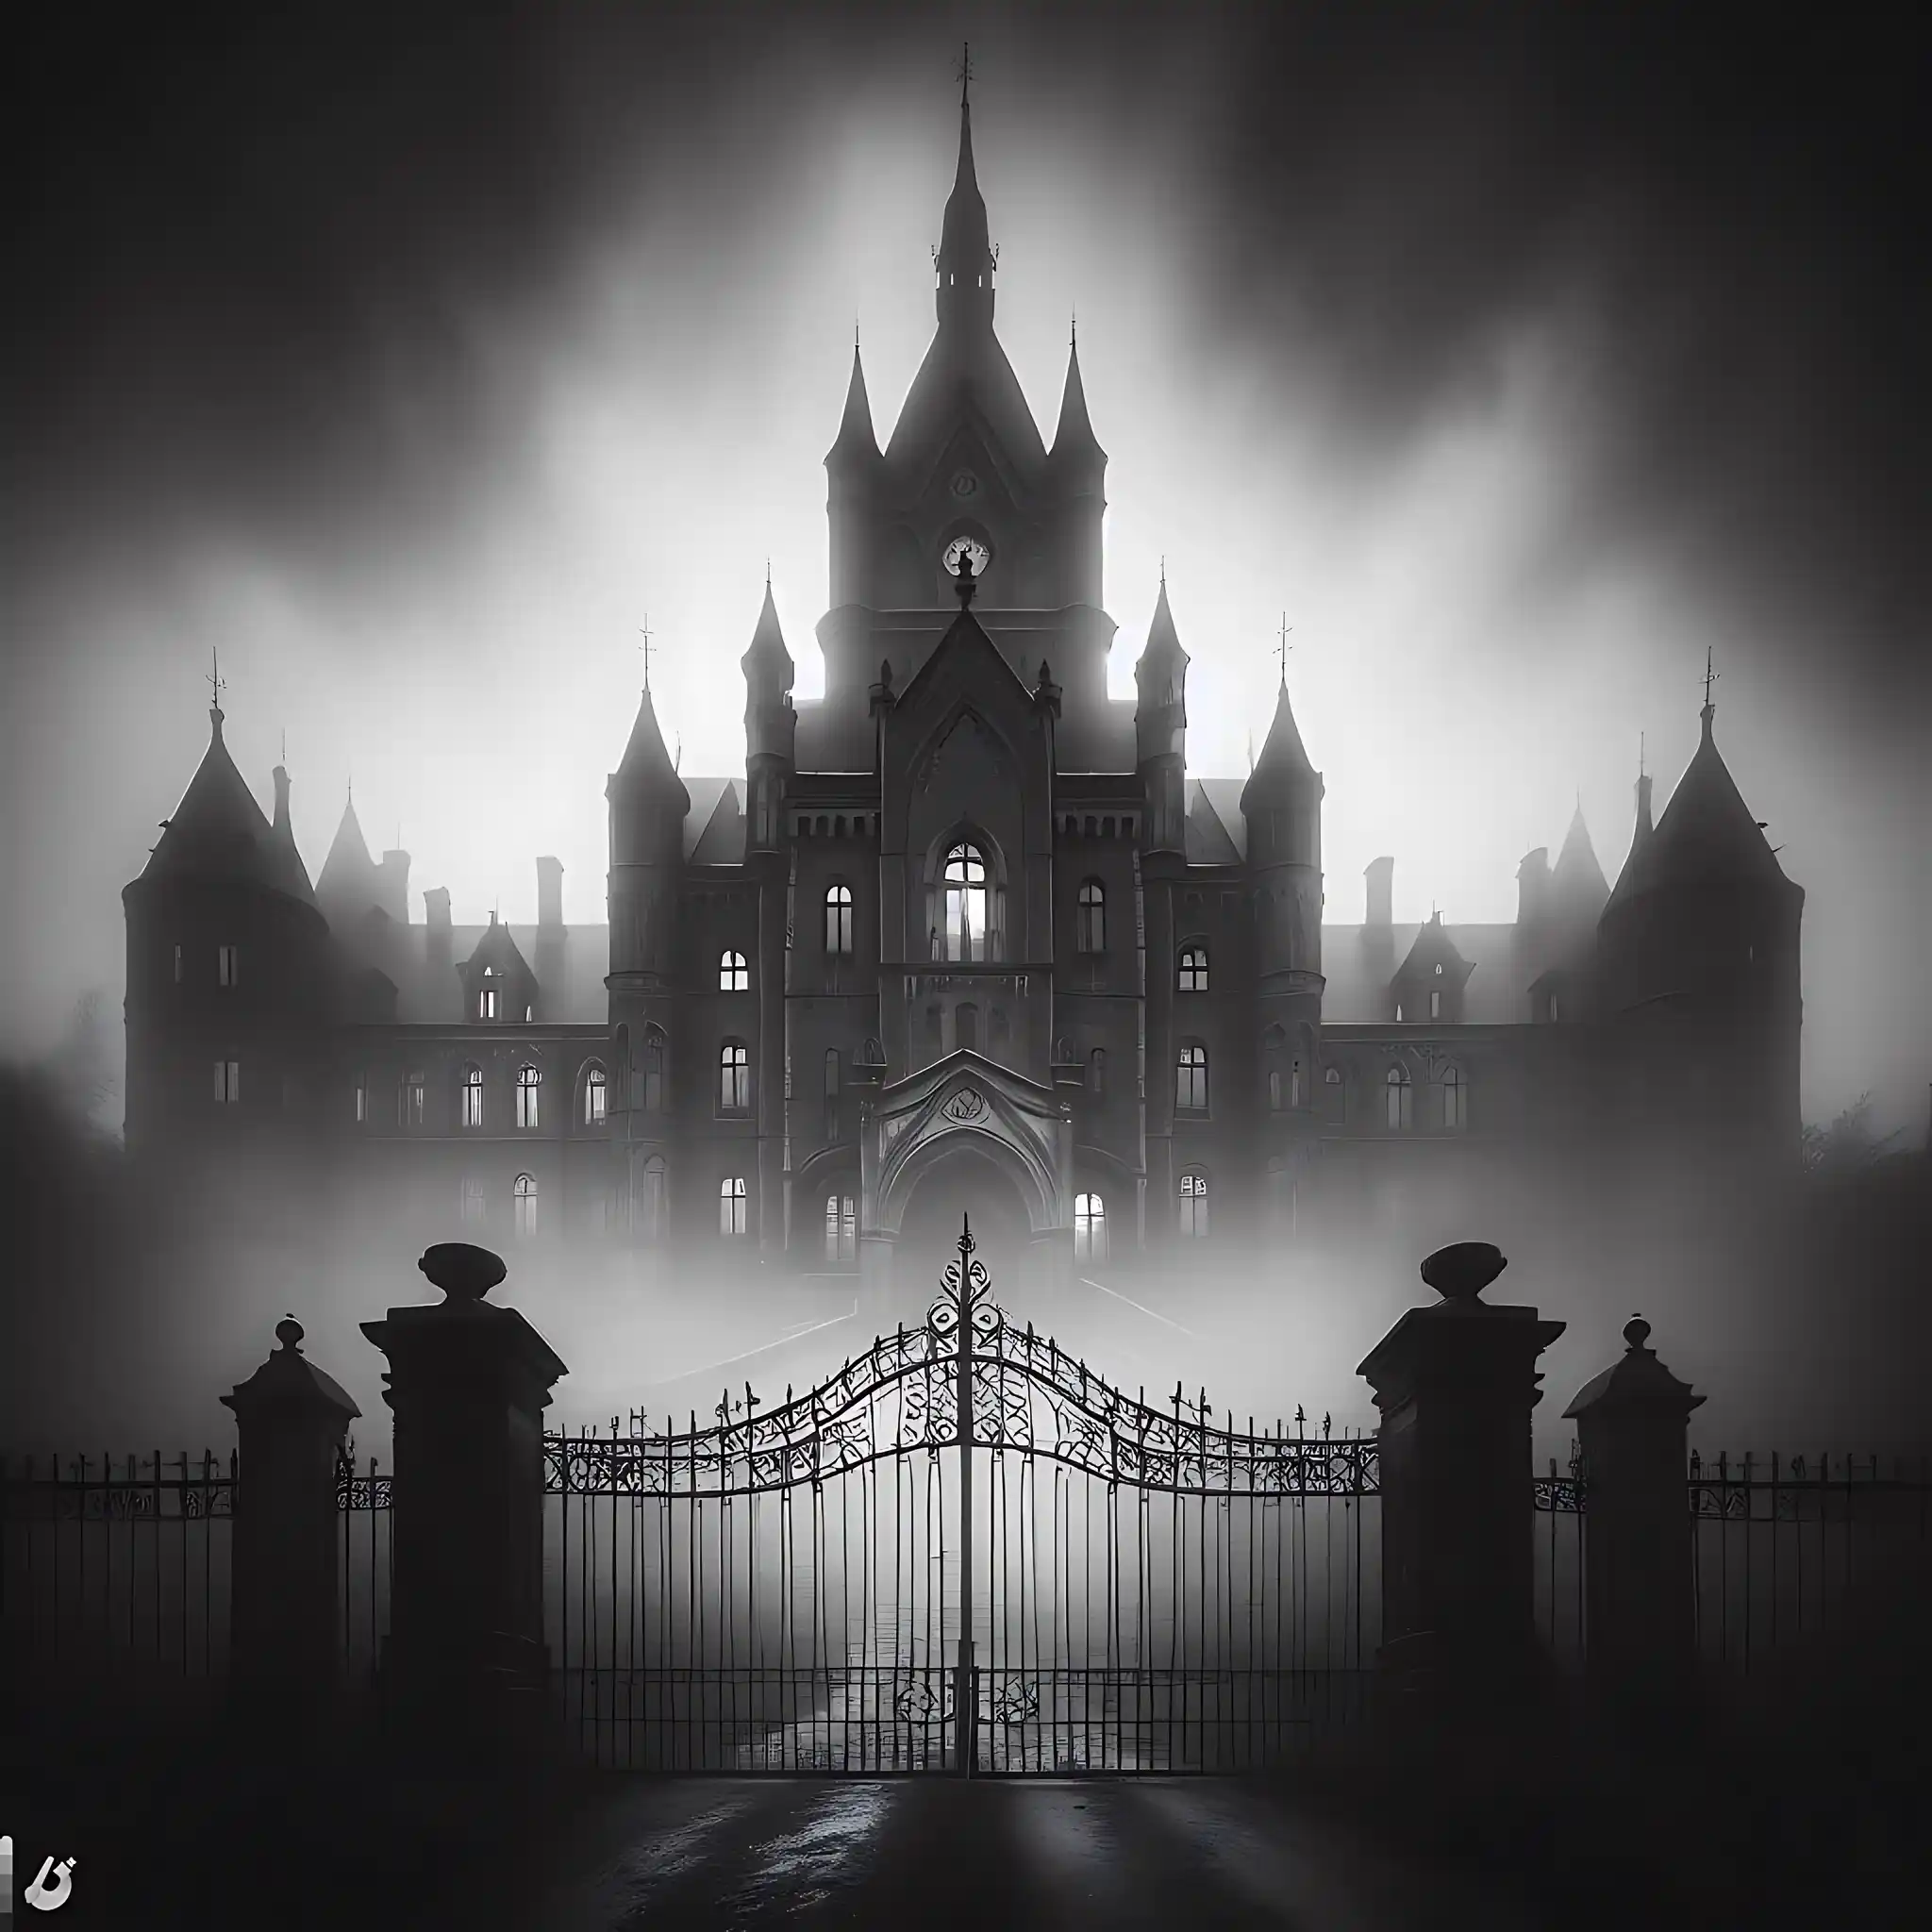 Creepy gothic asylum at twilight with foreboding open gates, embodying haunted asylums